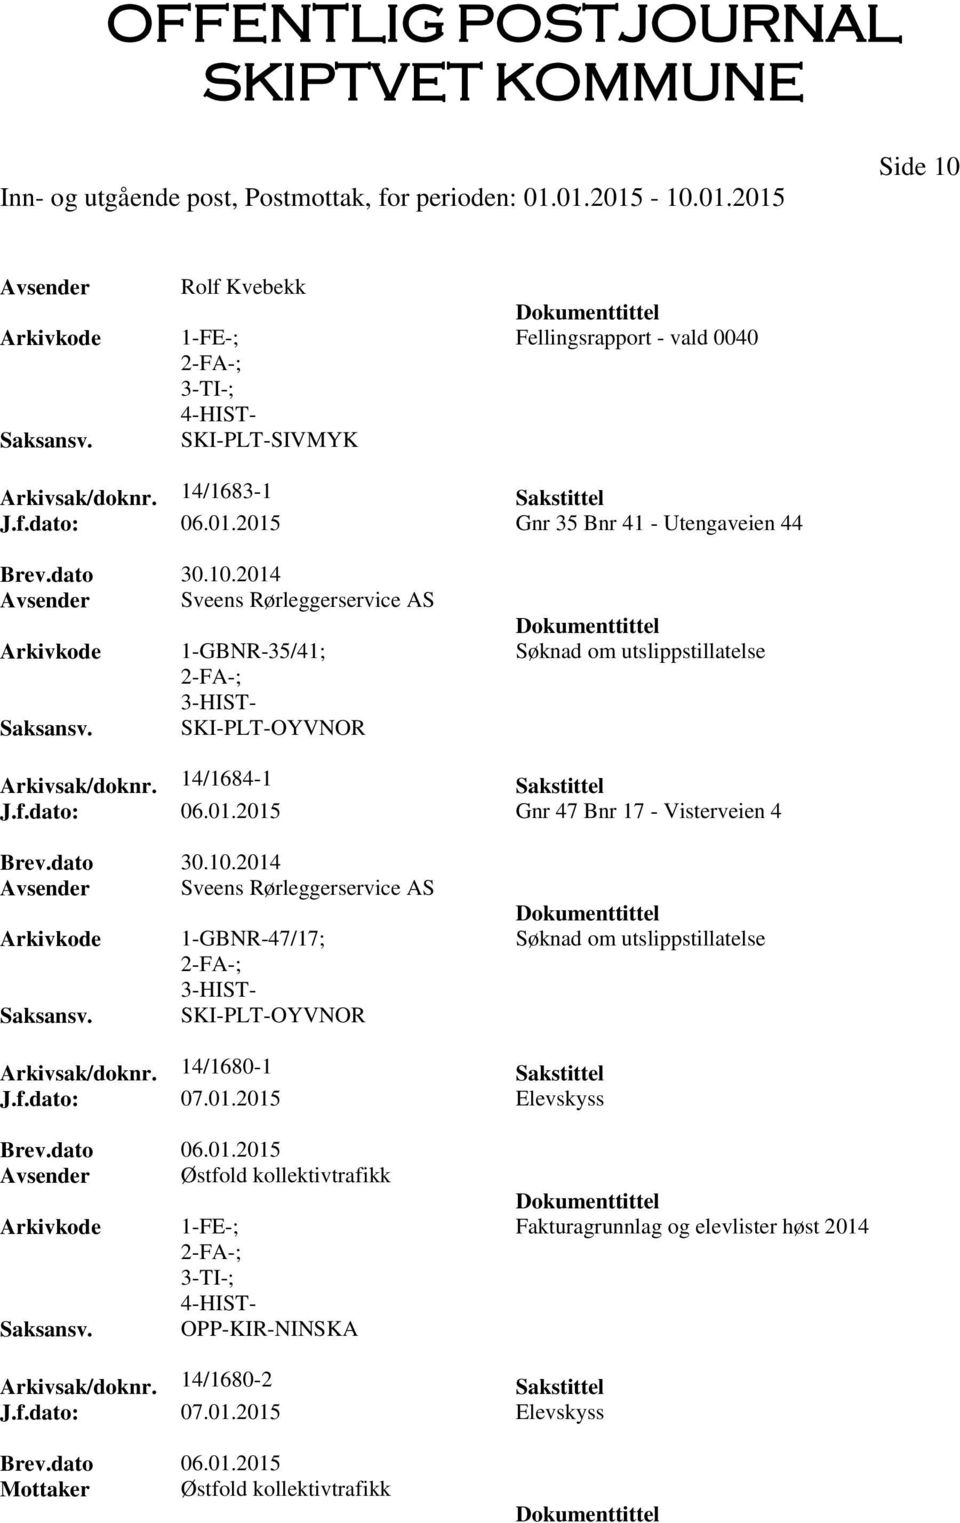 2014 Avsender Sveens Rørleggerservice AS 1-GBNR-47/17; SKI-PLT-OYVNOR Søknad om utslippstillatelse Arkivsak/doknr. 14/1680-1 Sakstittel J.f.dato: 07.01.2015 Elevskyss Brev.dato 06.01.2015 Avsender Østfold kollektivtrafikk OPP-KIR-NINSKA Fakturagrunnlag og elevlister høst 2014 Arkivsak/doknr.